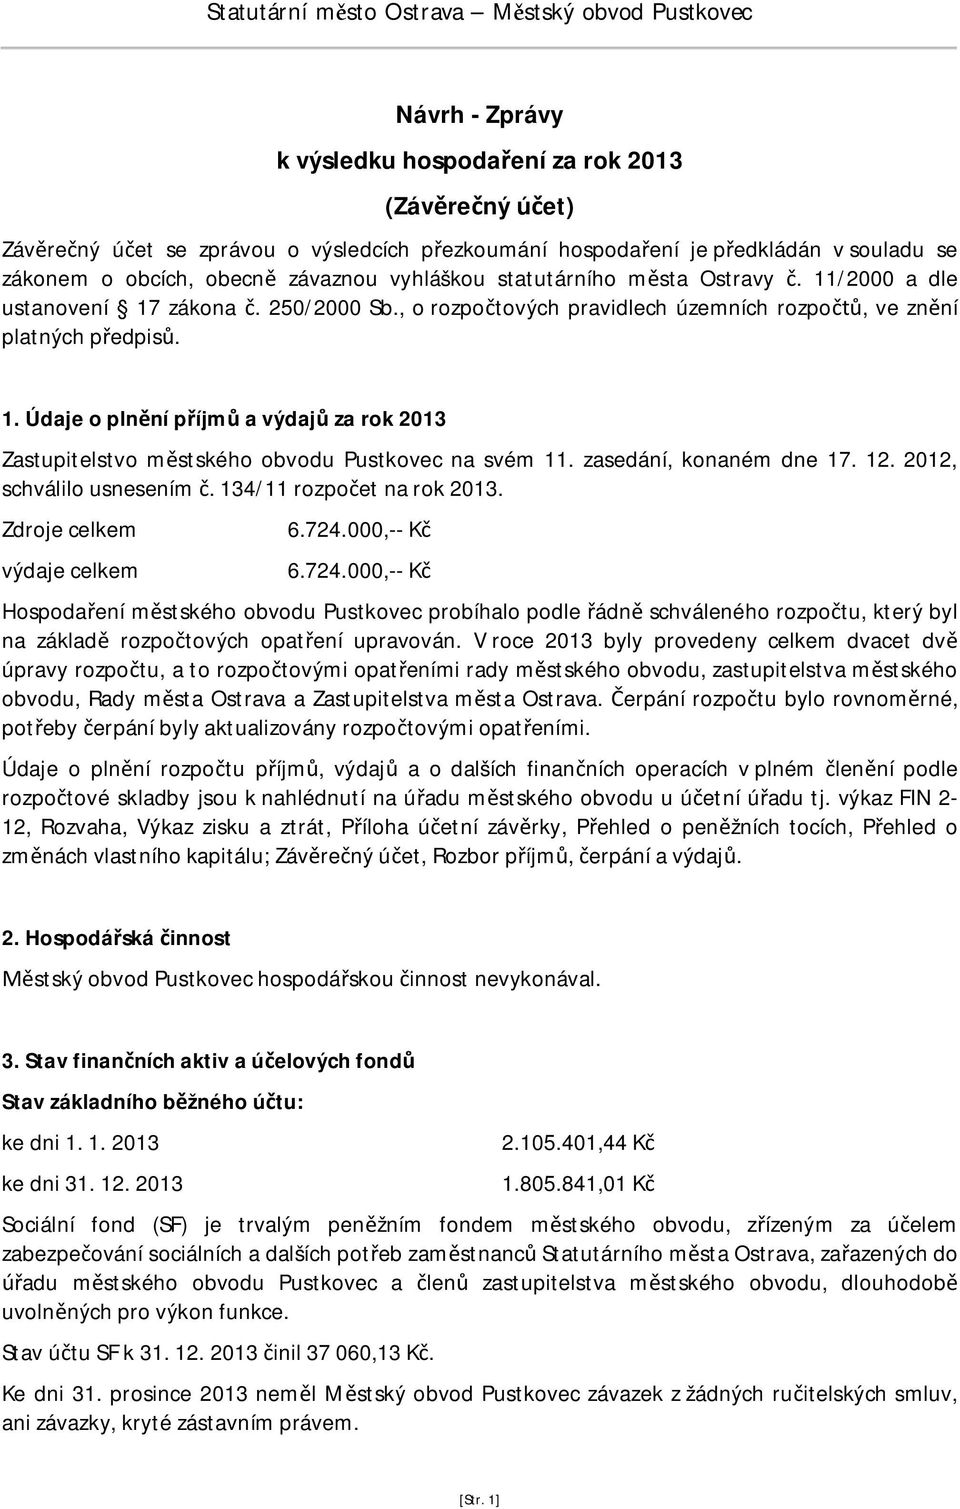 1. Údaje o pln ní p íjm a výdaj za rok 2013 Zastupitelstvo m stského obvodu Pustkovec na svém 11. zasedání, konaném dne 17. 12. 2012, schválilo usnesením. 134/11 rozpo et na rok 2013.